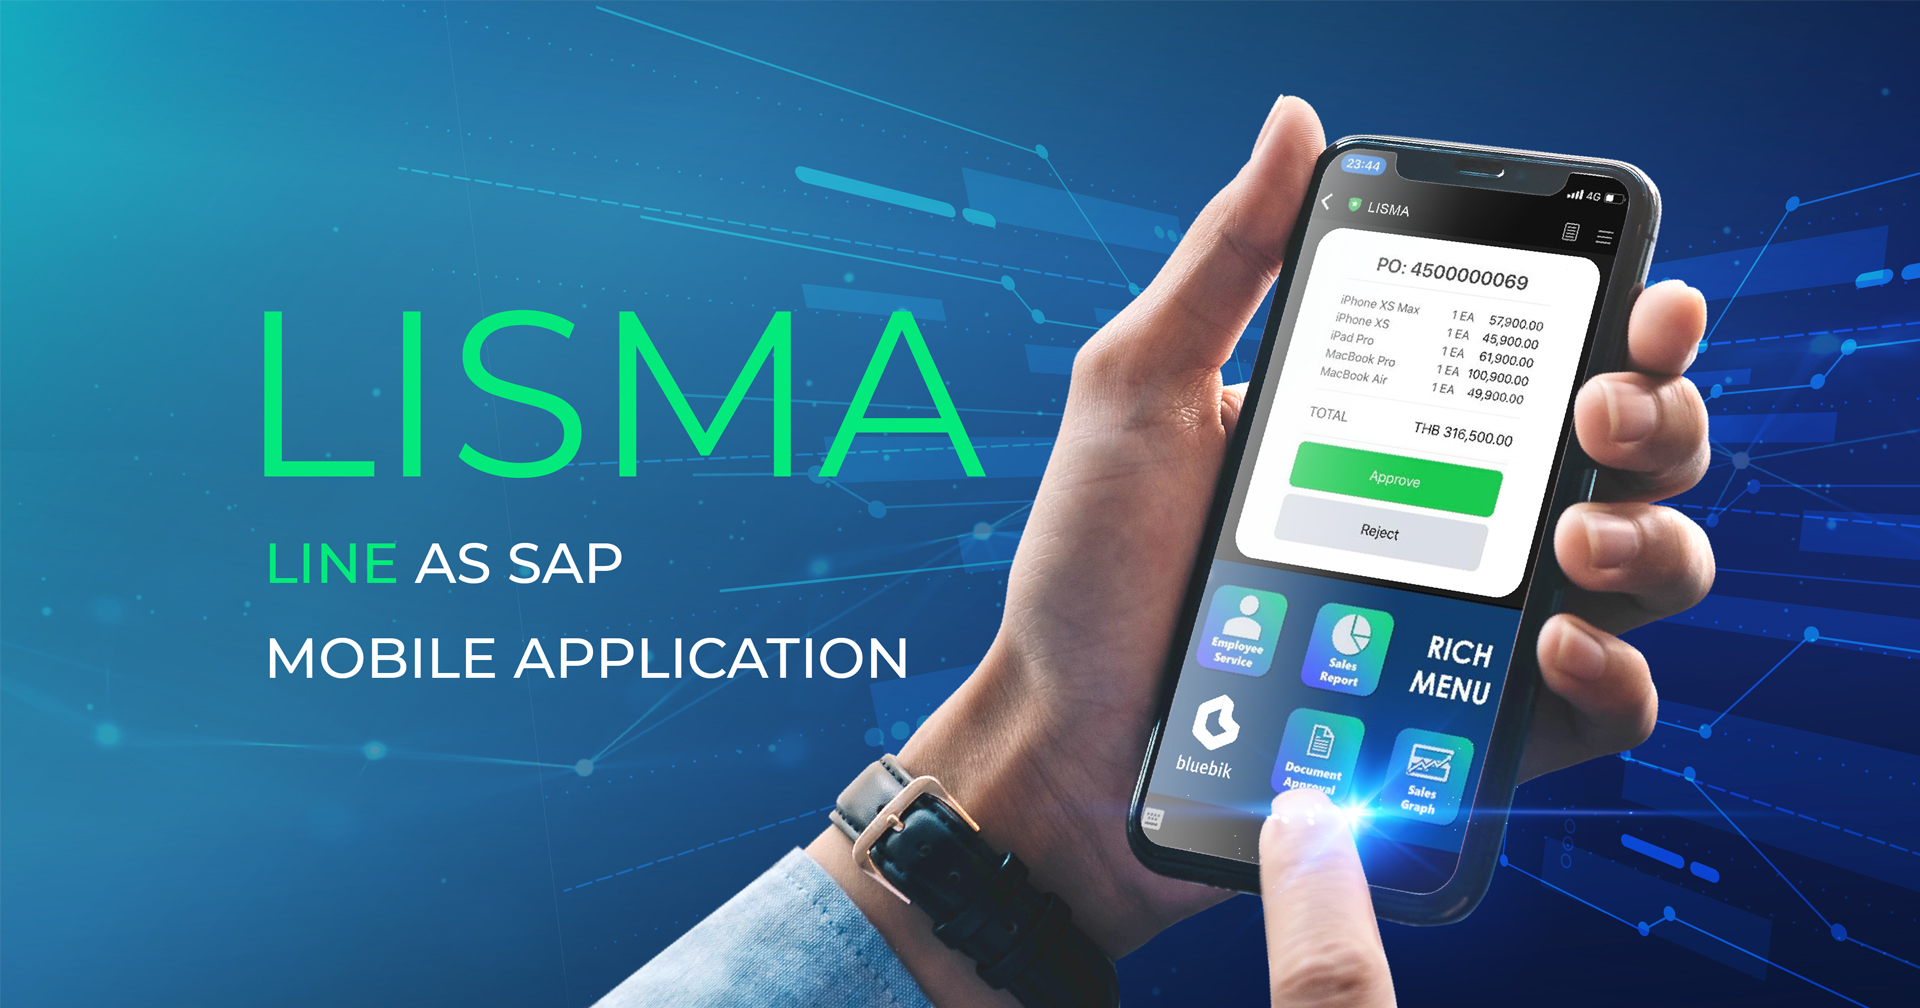 บลูบิค ชู ‘LISMA’ ปฏิรูปการใช้งานระบบ SAP บนสมาร์ตโฟน  จับกลุ่มองค์กรขนาดกลางถึงใหญ่